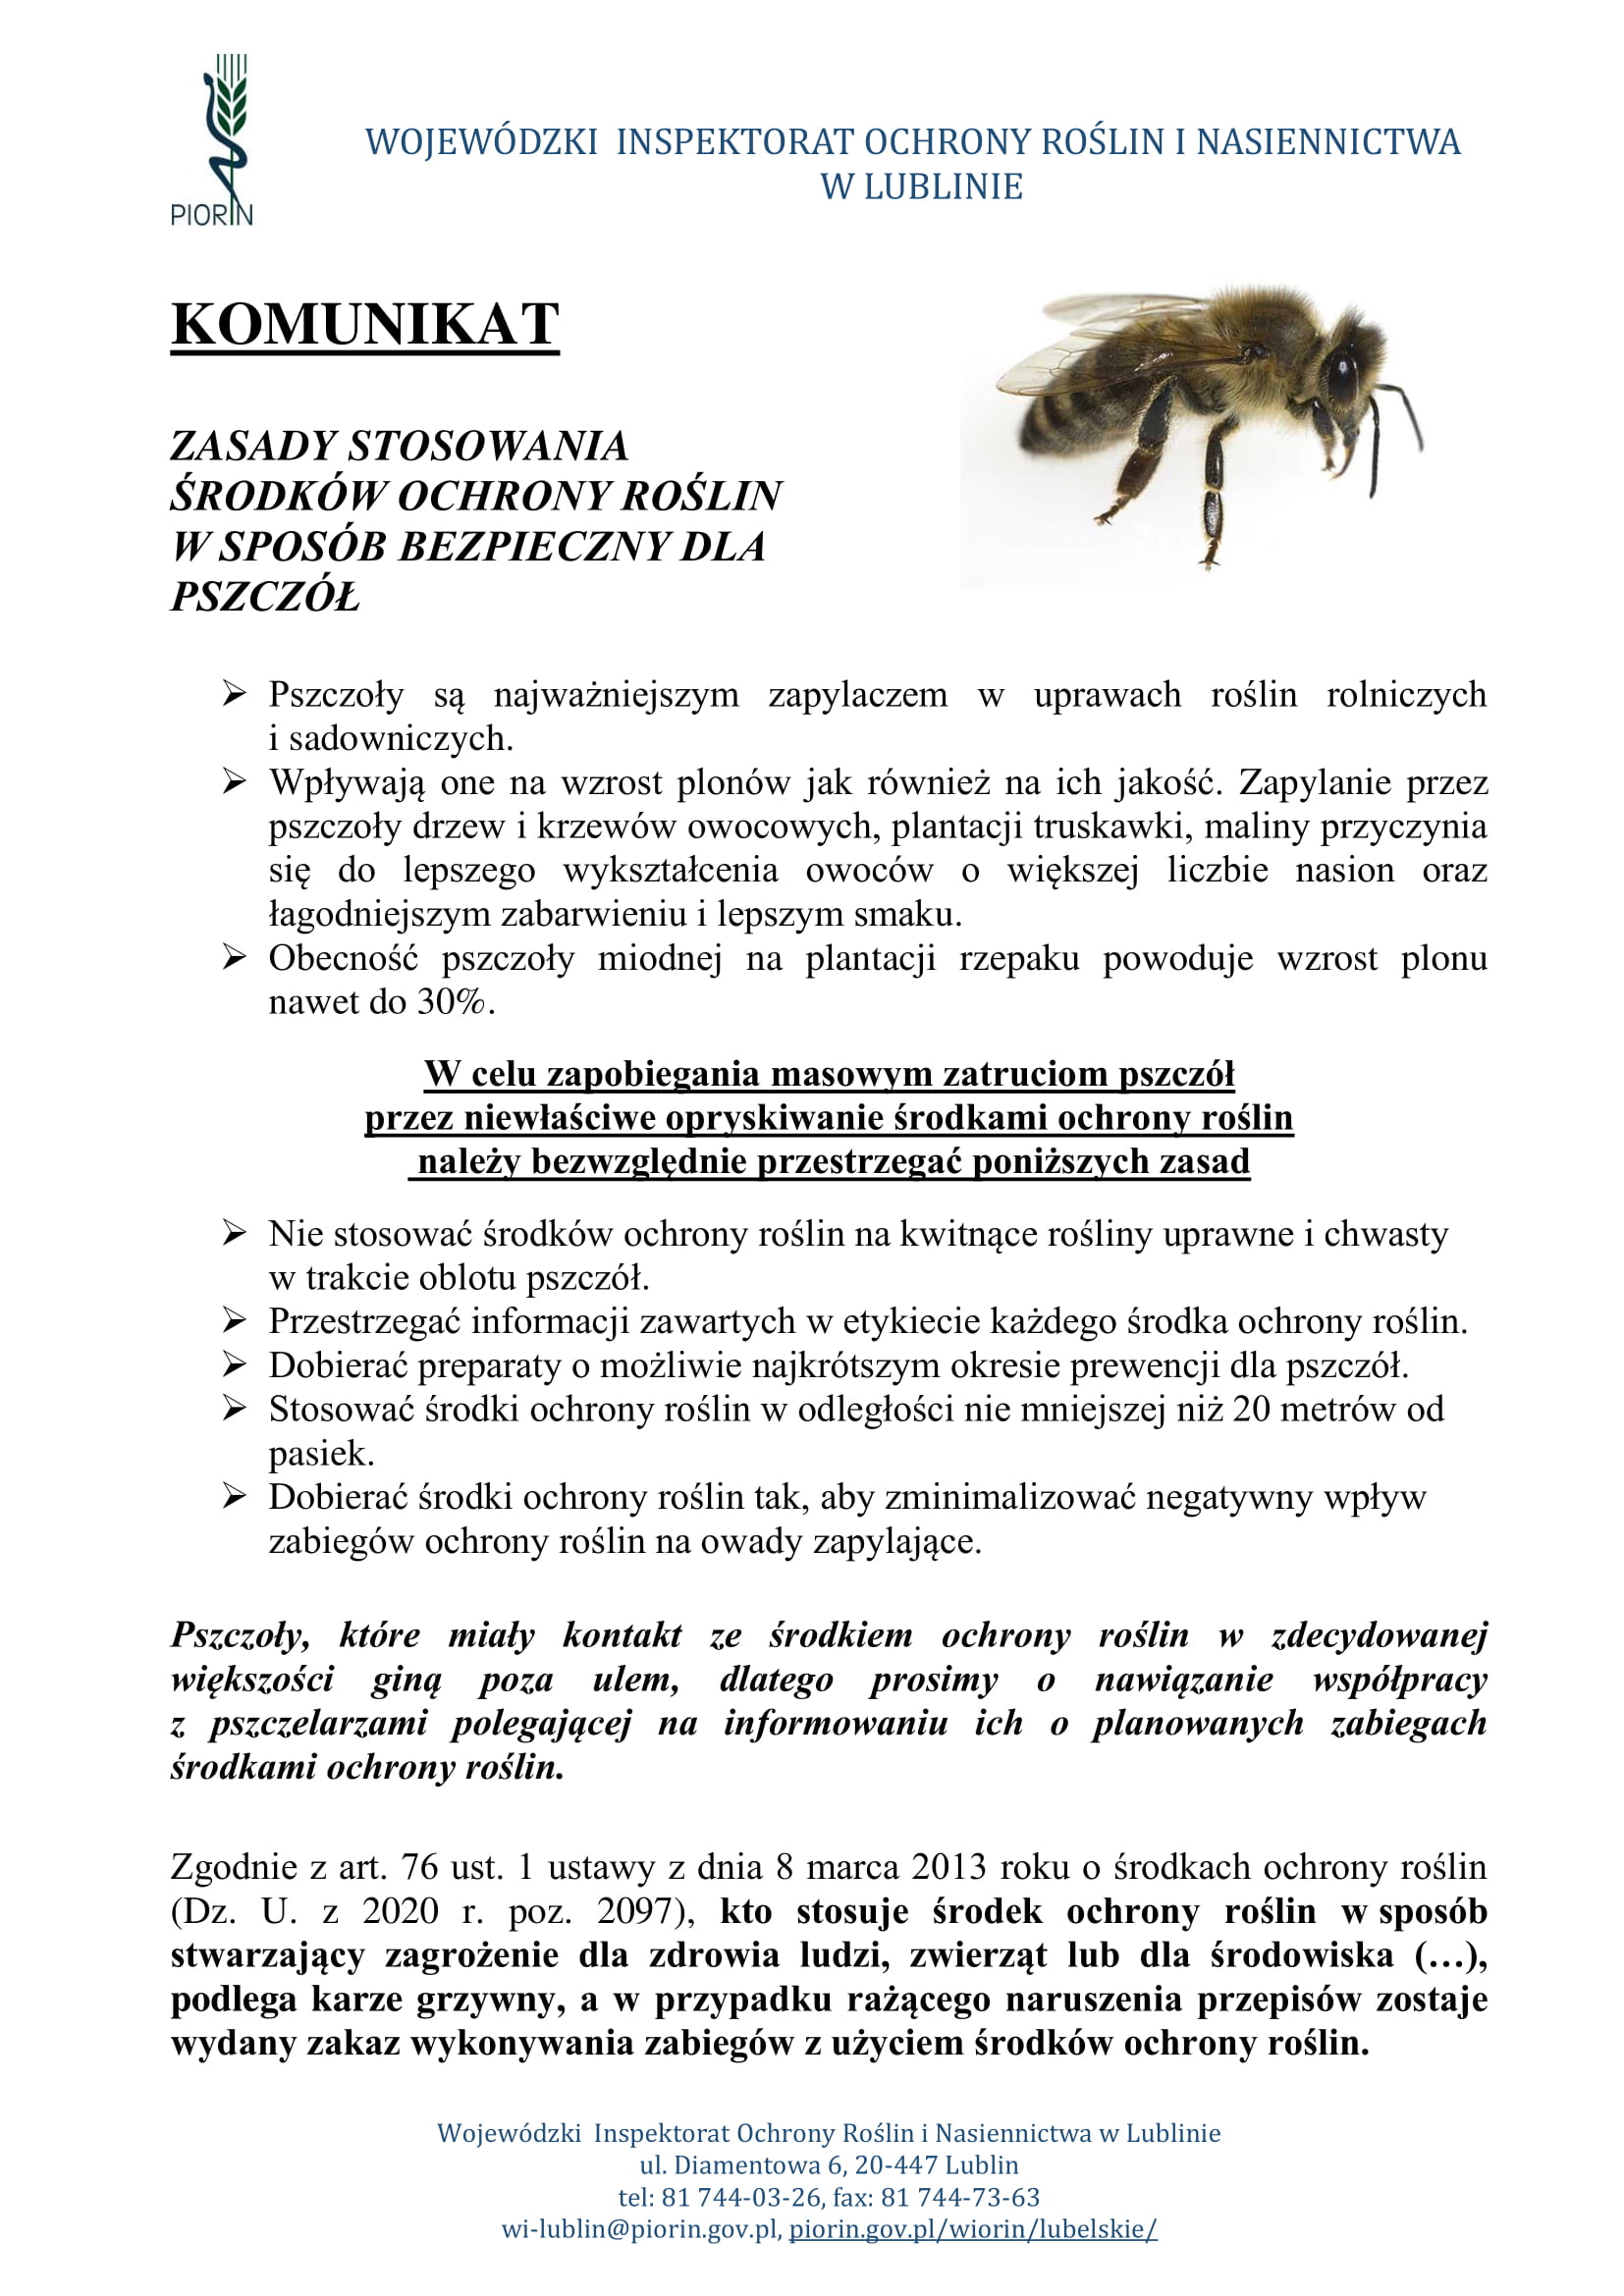 Zasady stosowania środków ochrony roślin w sposób bezpieczny dla pszczół